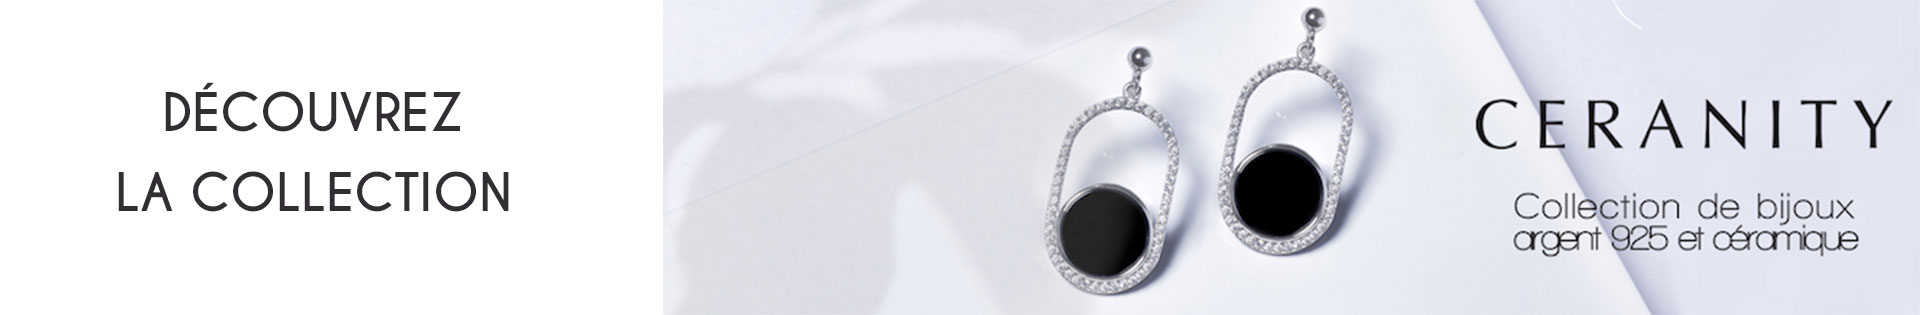 Marques de bijoux - Ceranity Silver - Bracelet